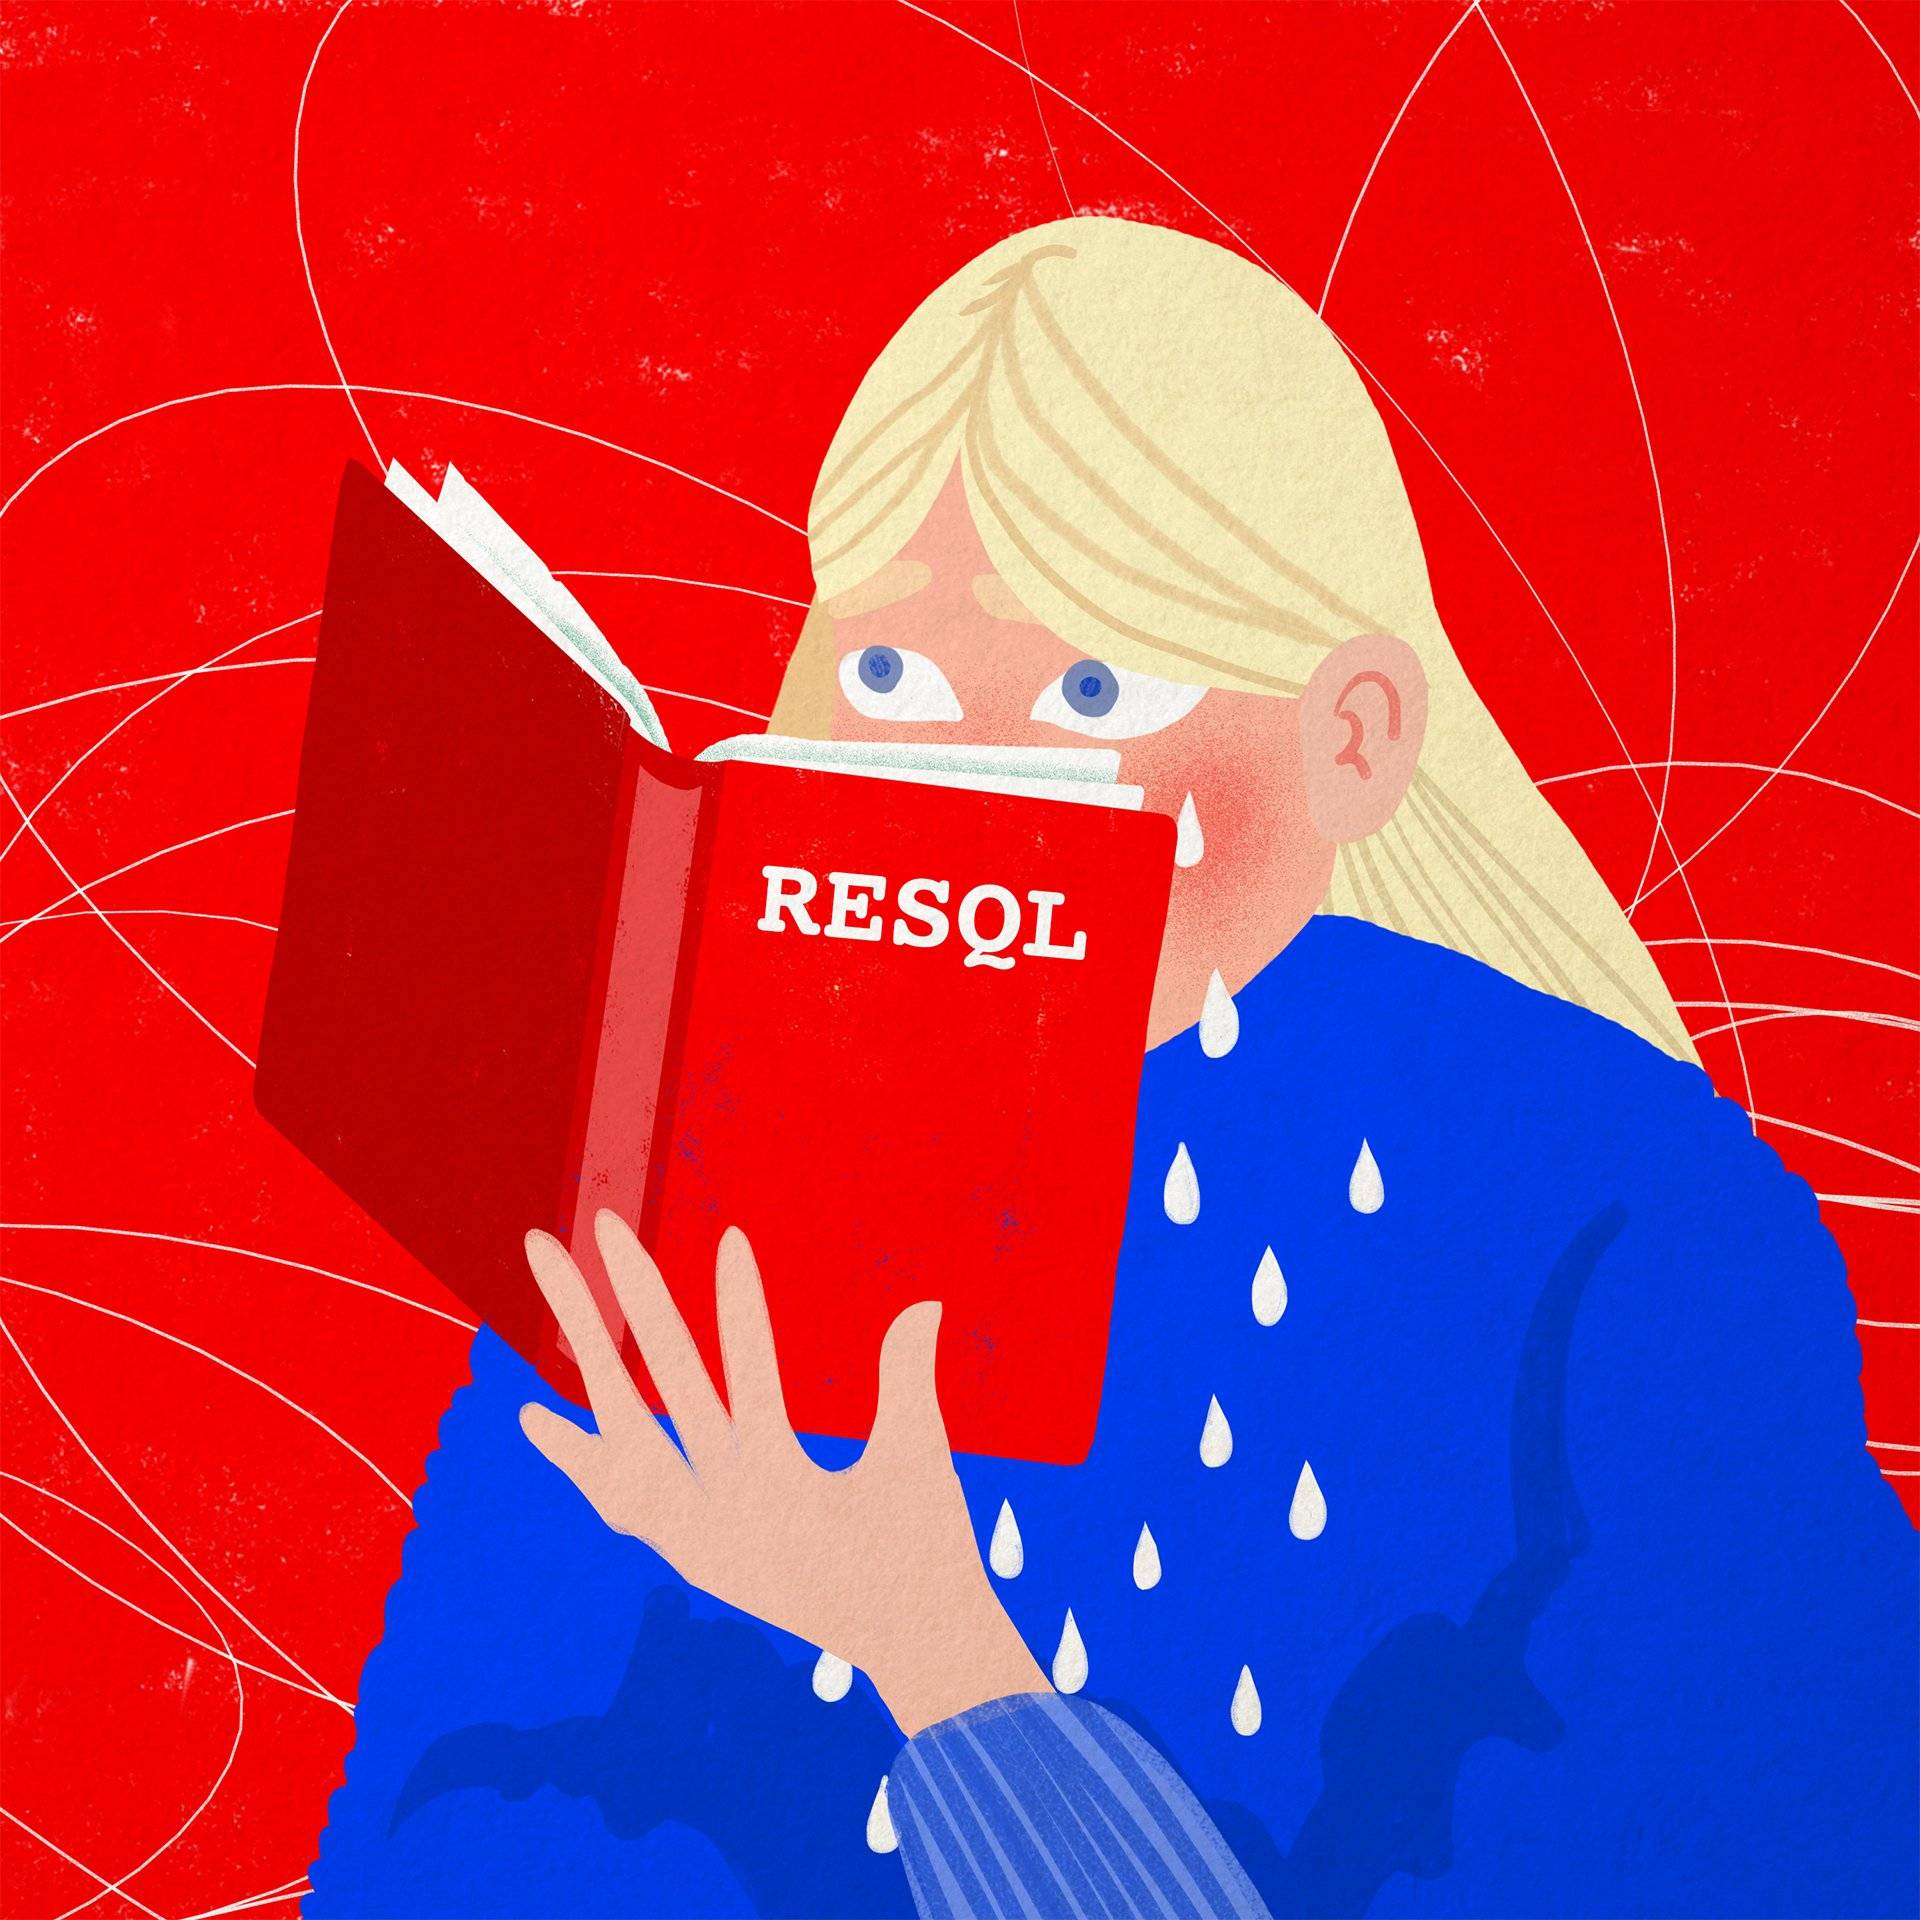 ilustracja przedstawia dziewczynkę czytającą książkę z czerwoną okładką i napisem RESQL